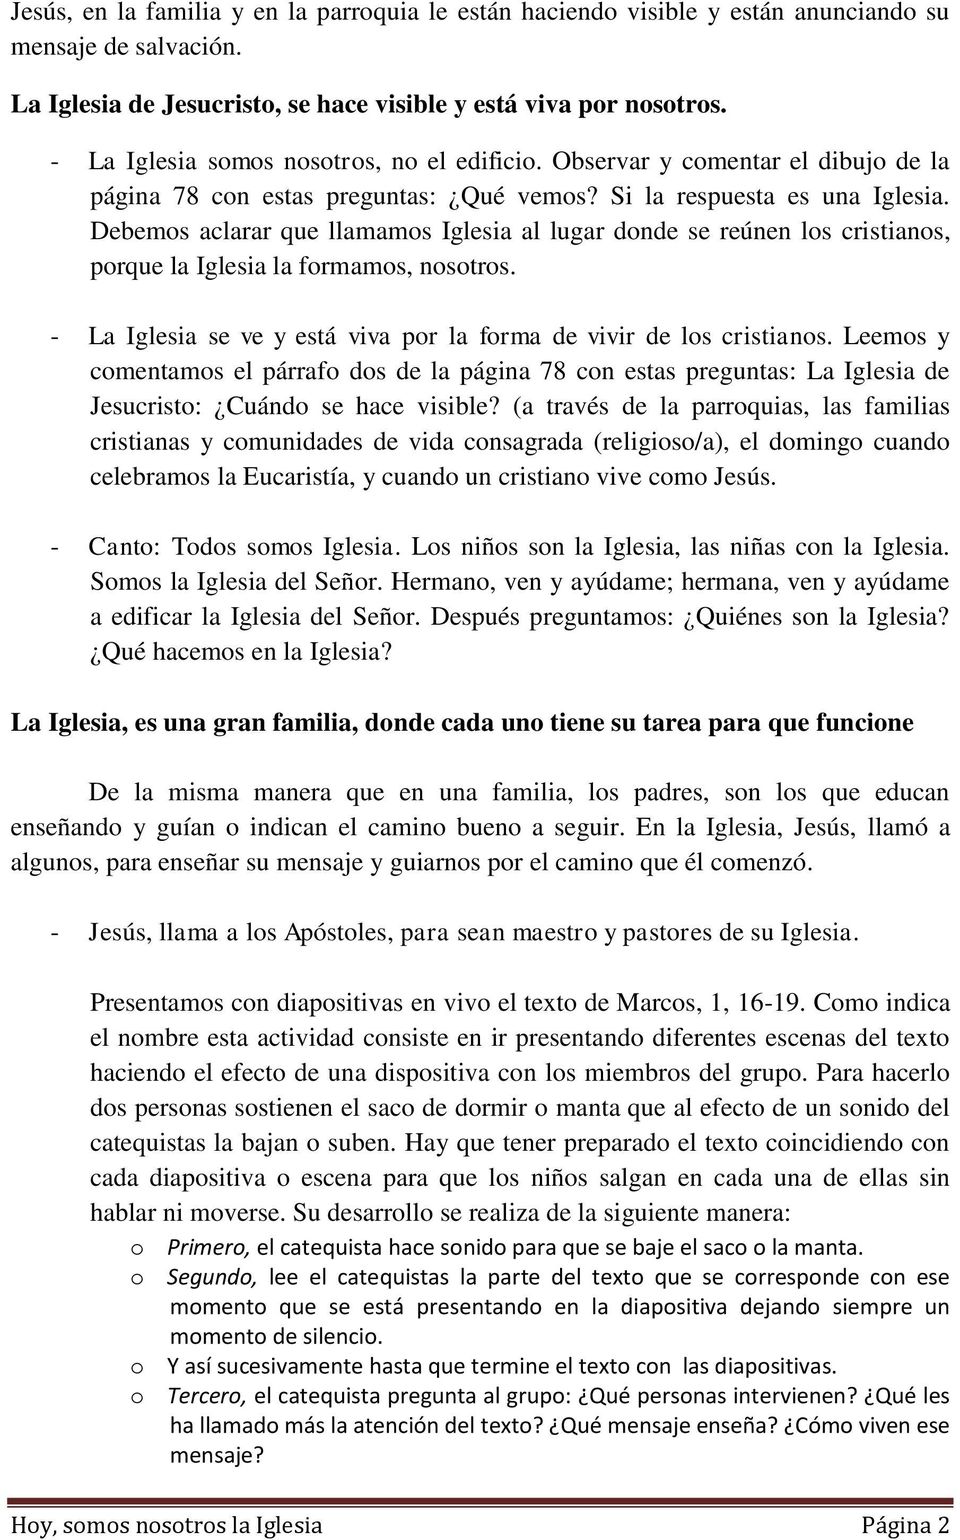 TEMA 25: HOY, NOSOTROS SOMOS LA IGLESIA - PDF Free Download